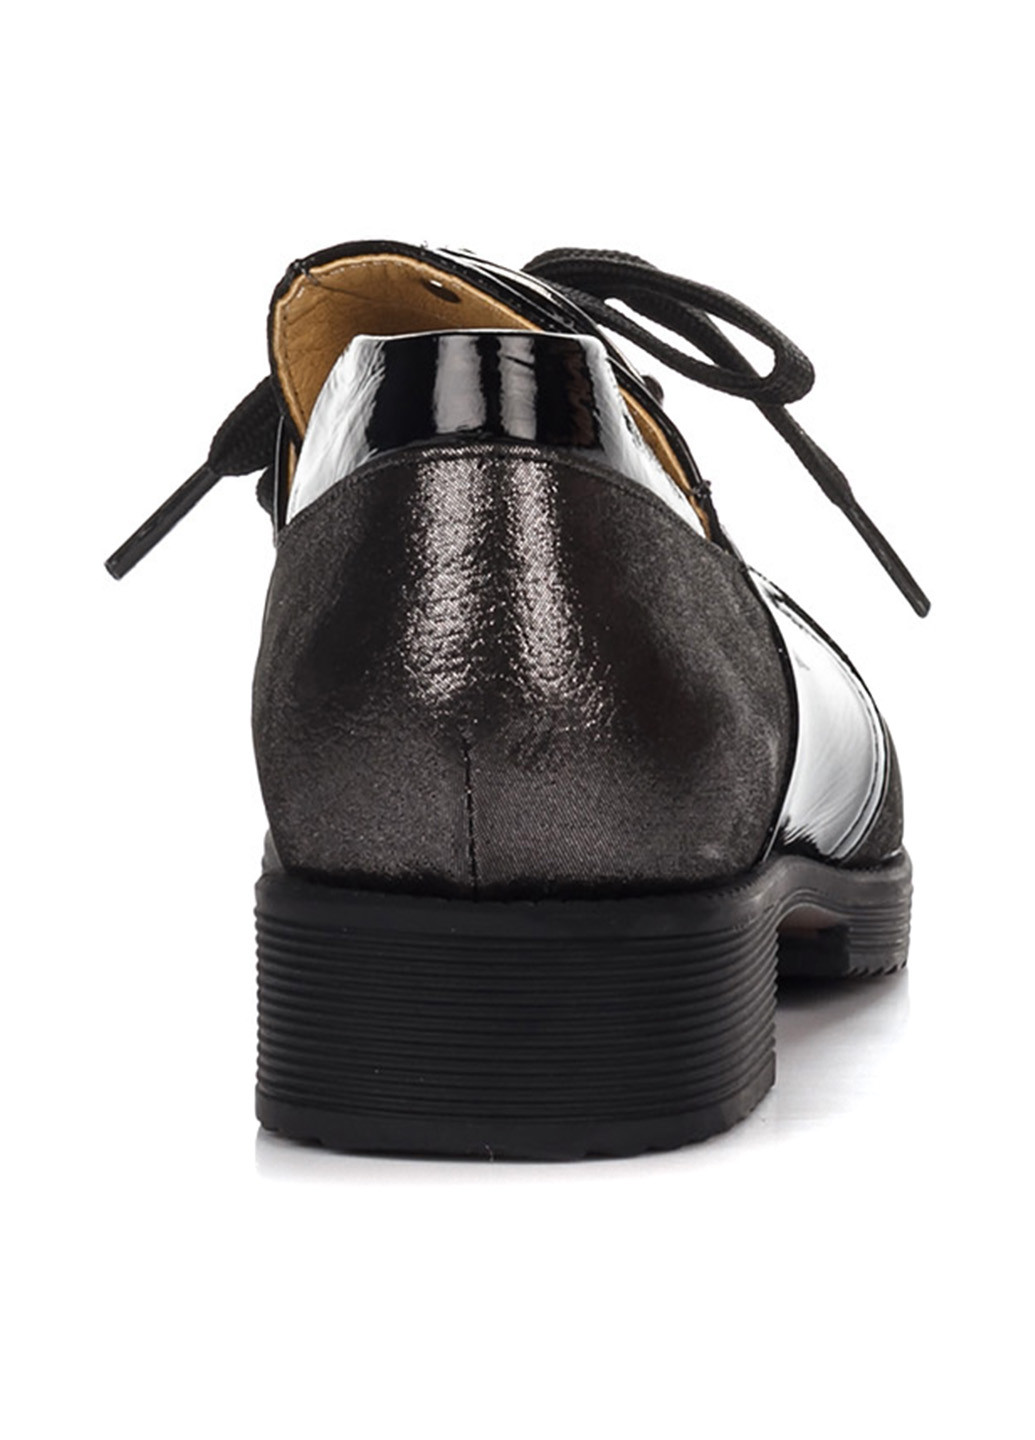 Туфли Rifellini на низком каблуке с глиттером, лаковые